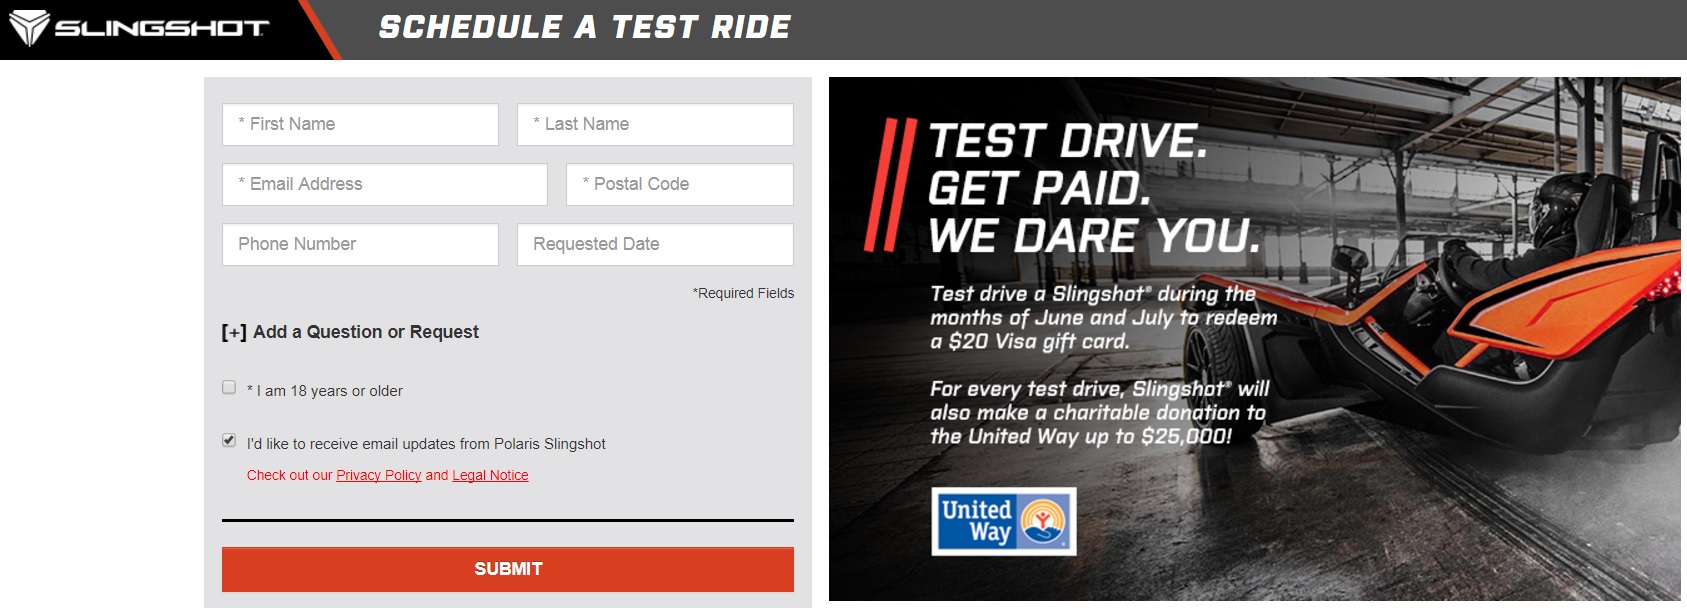 a screenshot of a test ride